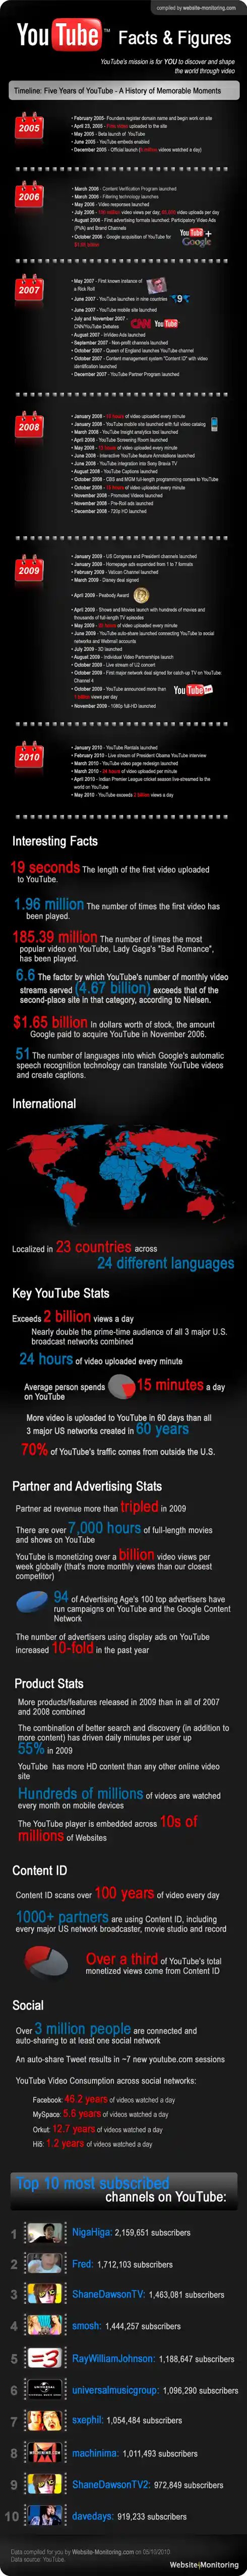 youtube infographic resized 600